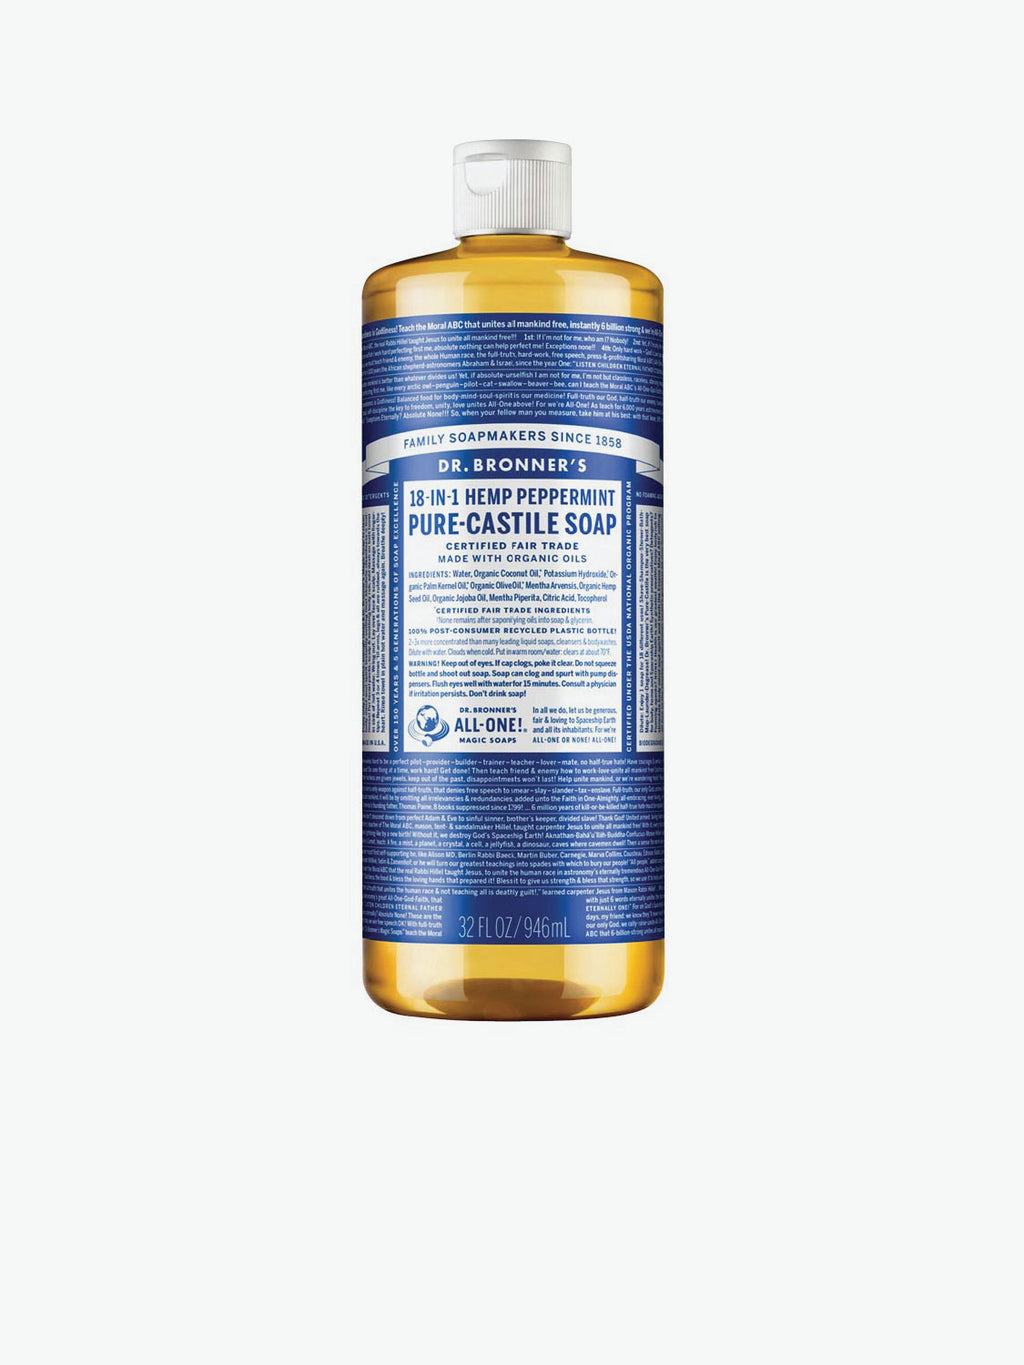 Dr. Bronner's Peppermint Pure-Castile Liquid Soap